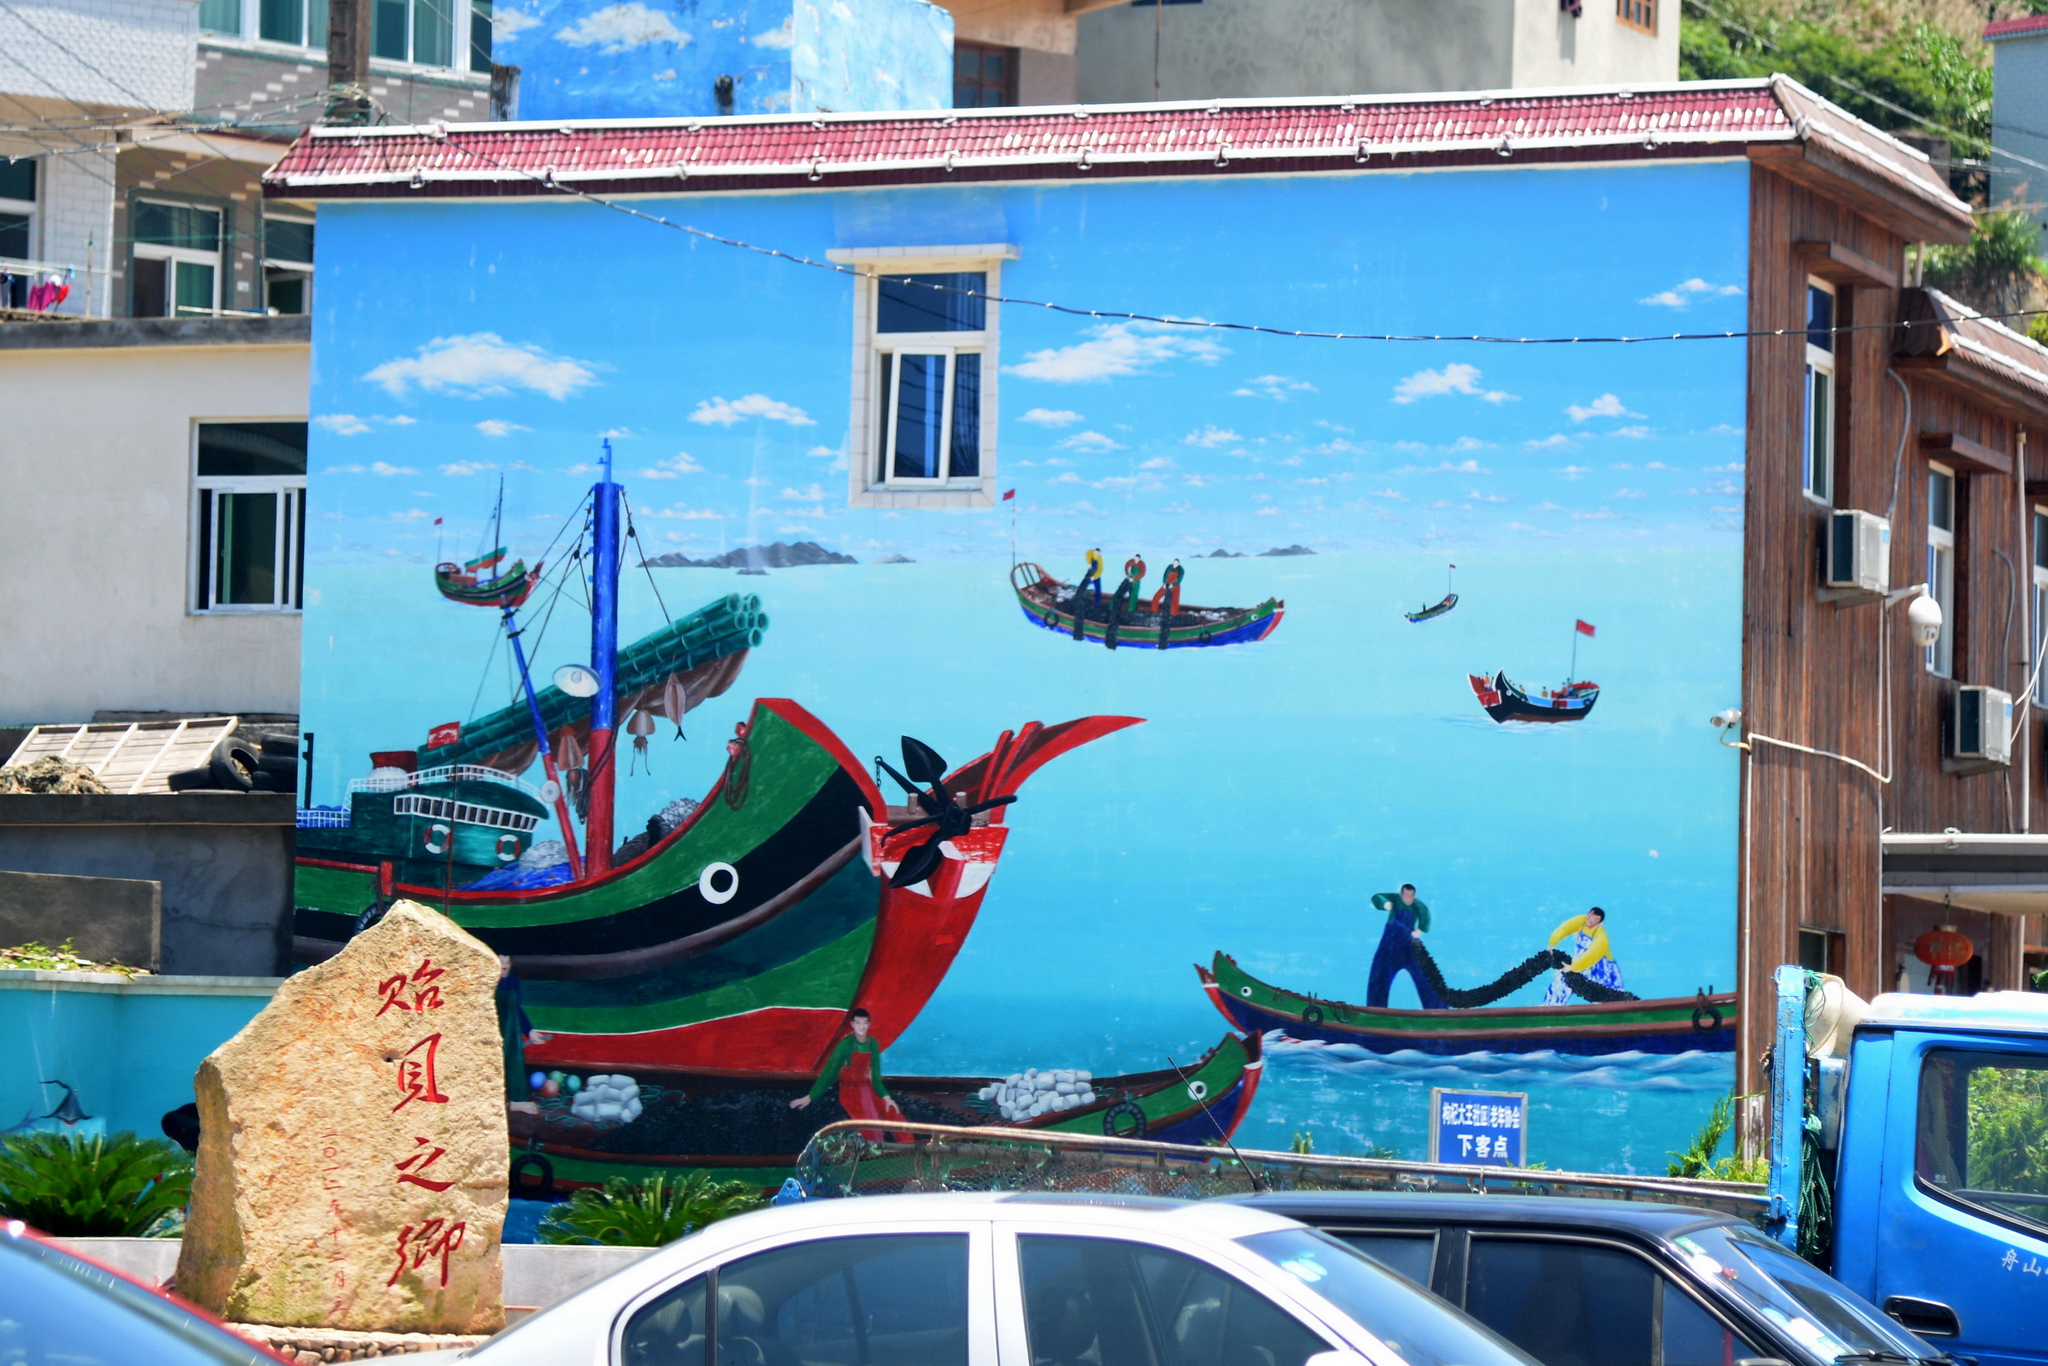 枸杞岛又是渔民画之乡,许多墙面上绘制着精美的渔民画,浓墨重彩十分